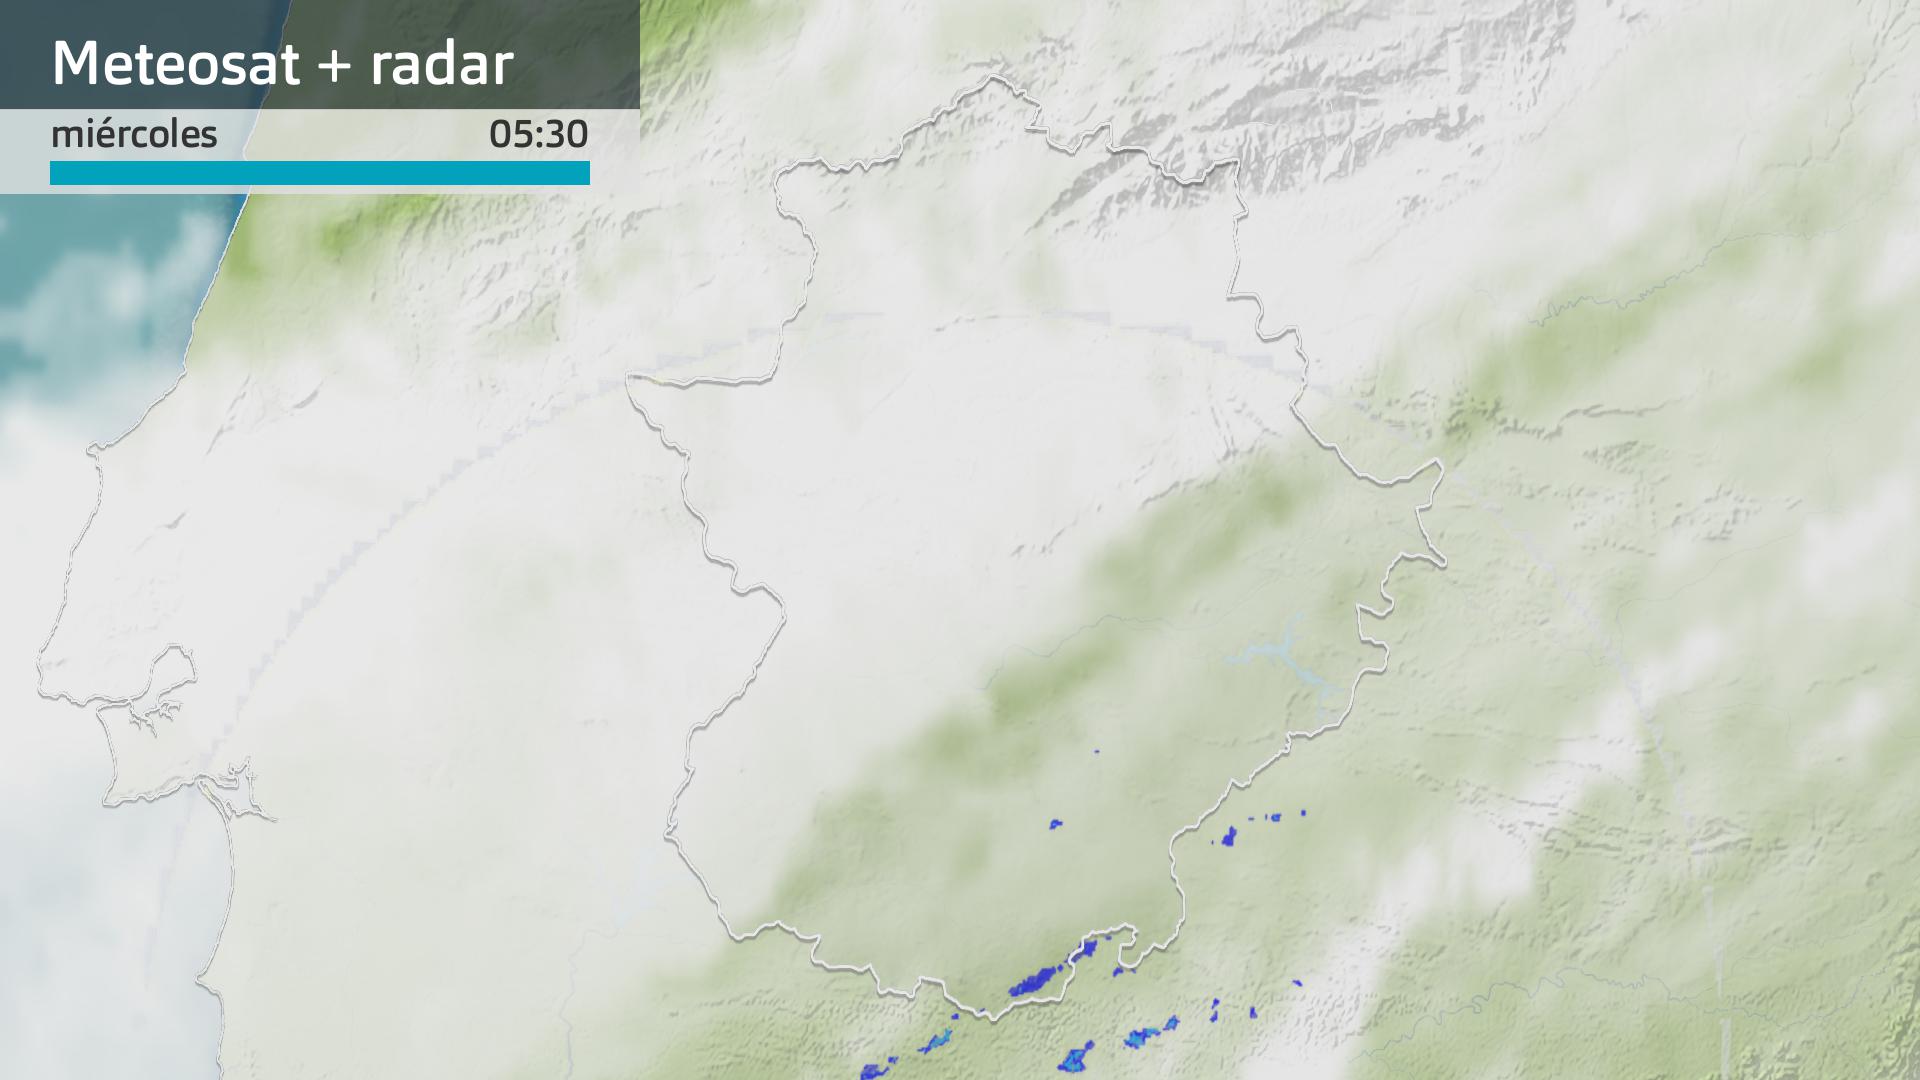 Imagen del Meteosat + radar meteorológico miércoles 13 de diciembre 5:30 h.